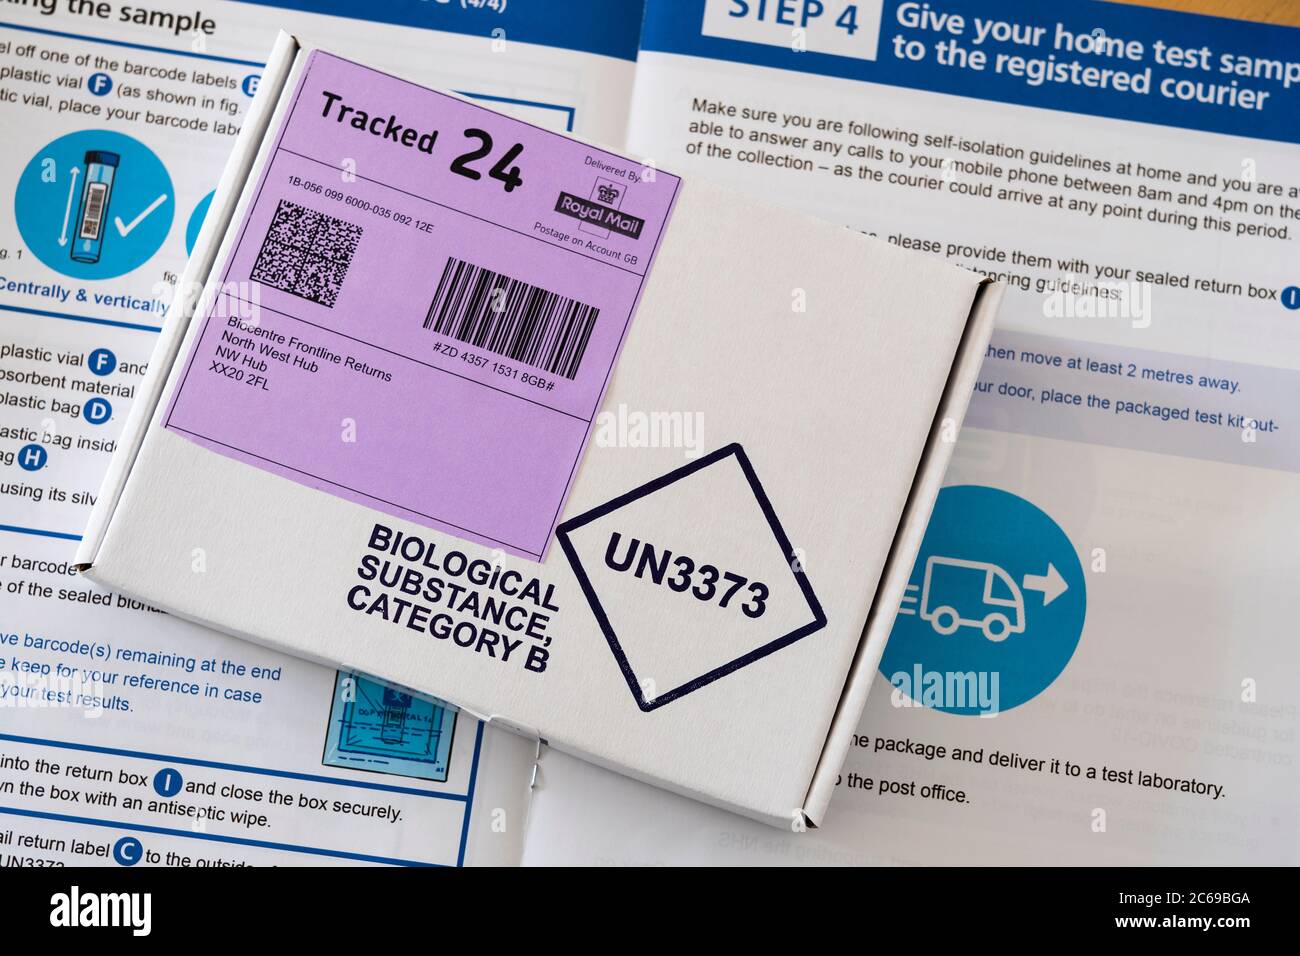 Un test scellé du coronavirus (Covid-19) dans une boîte de catégorie B de substance biologique, en plus des instructions pour prendre une trousse de test à domicile, au Royaume-Uni Banque D'Images